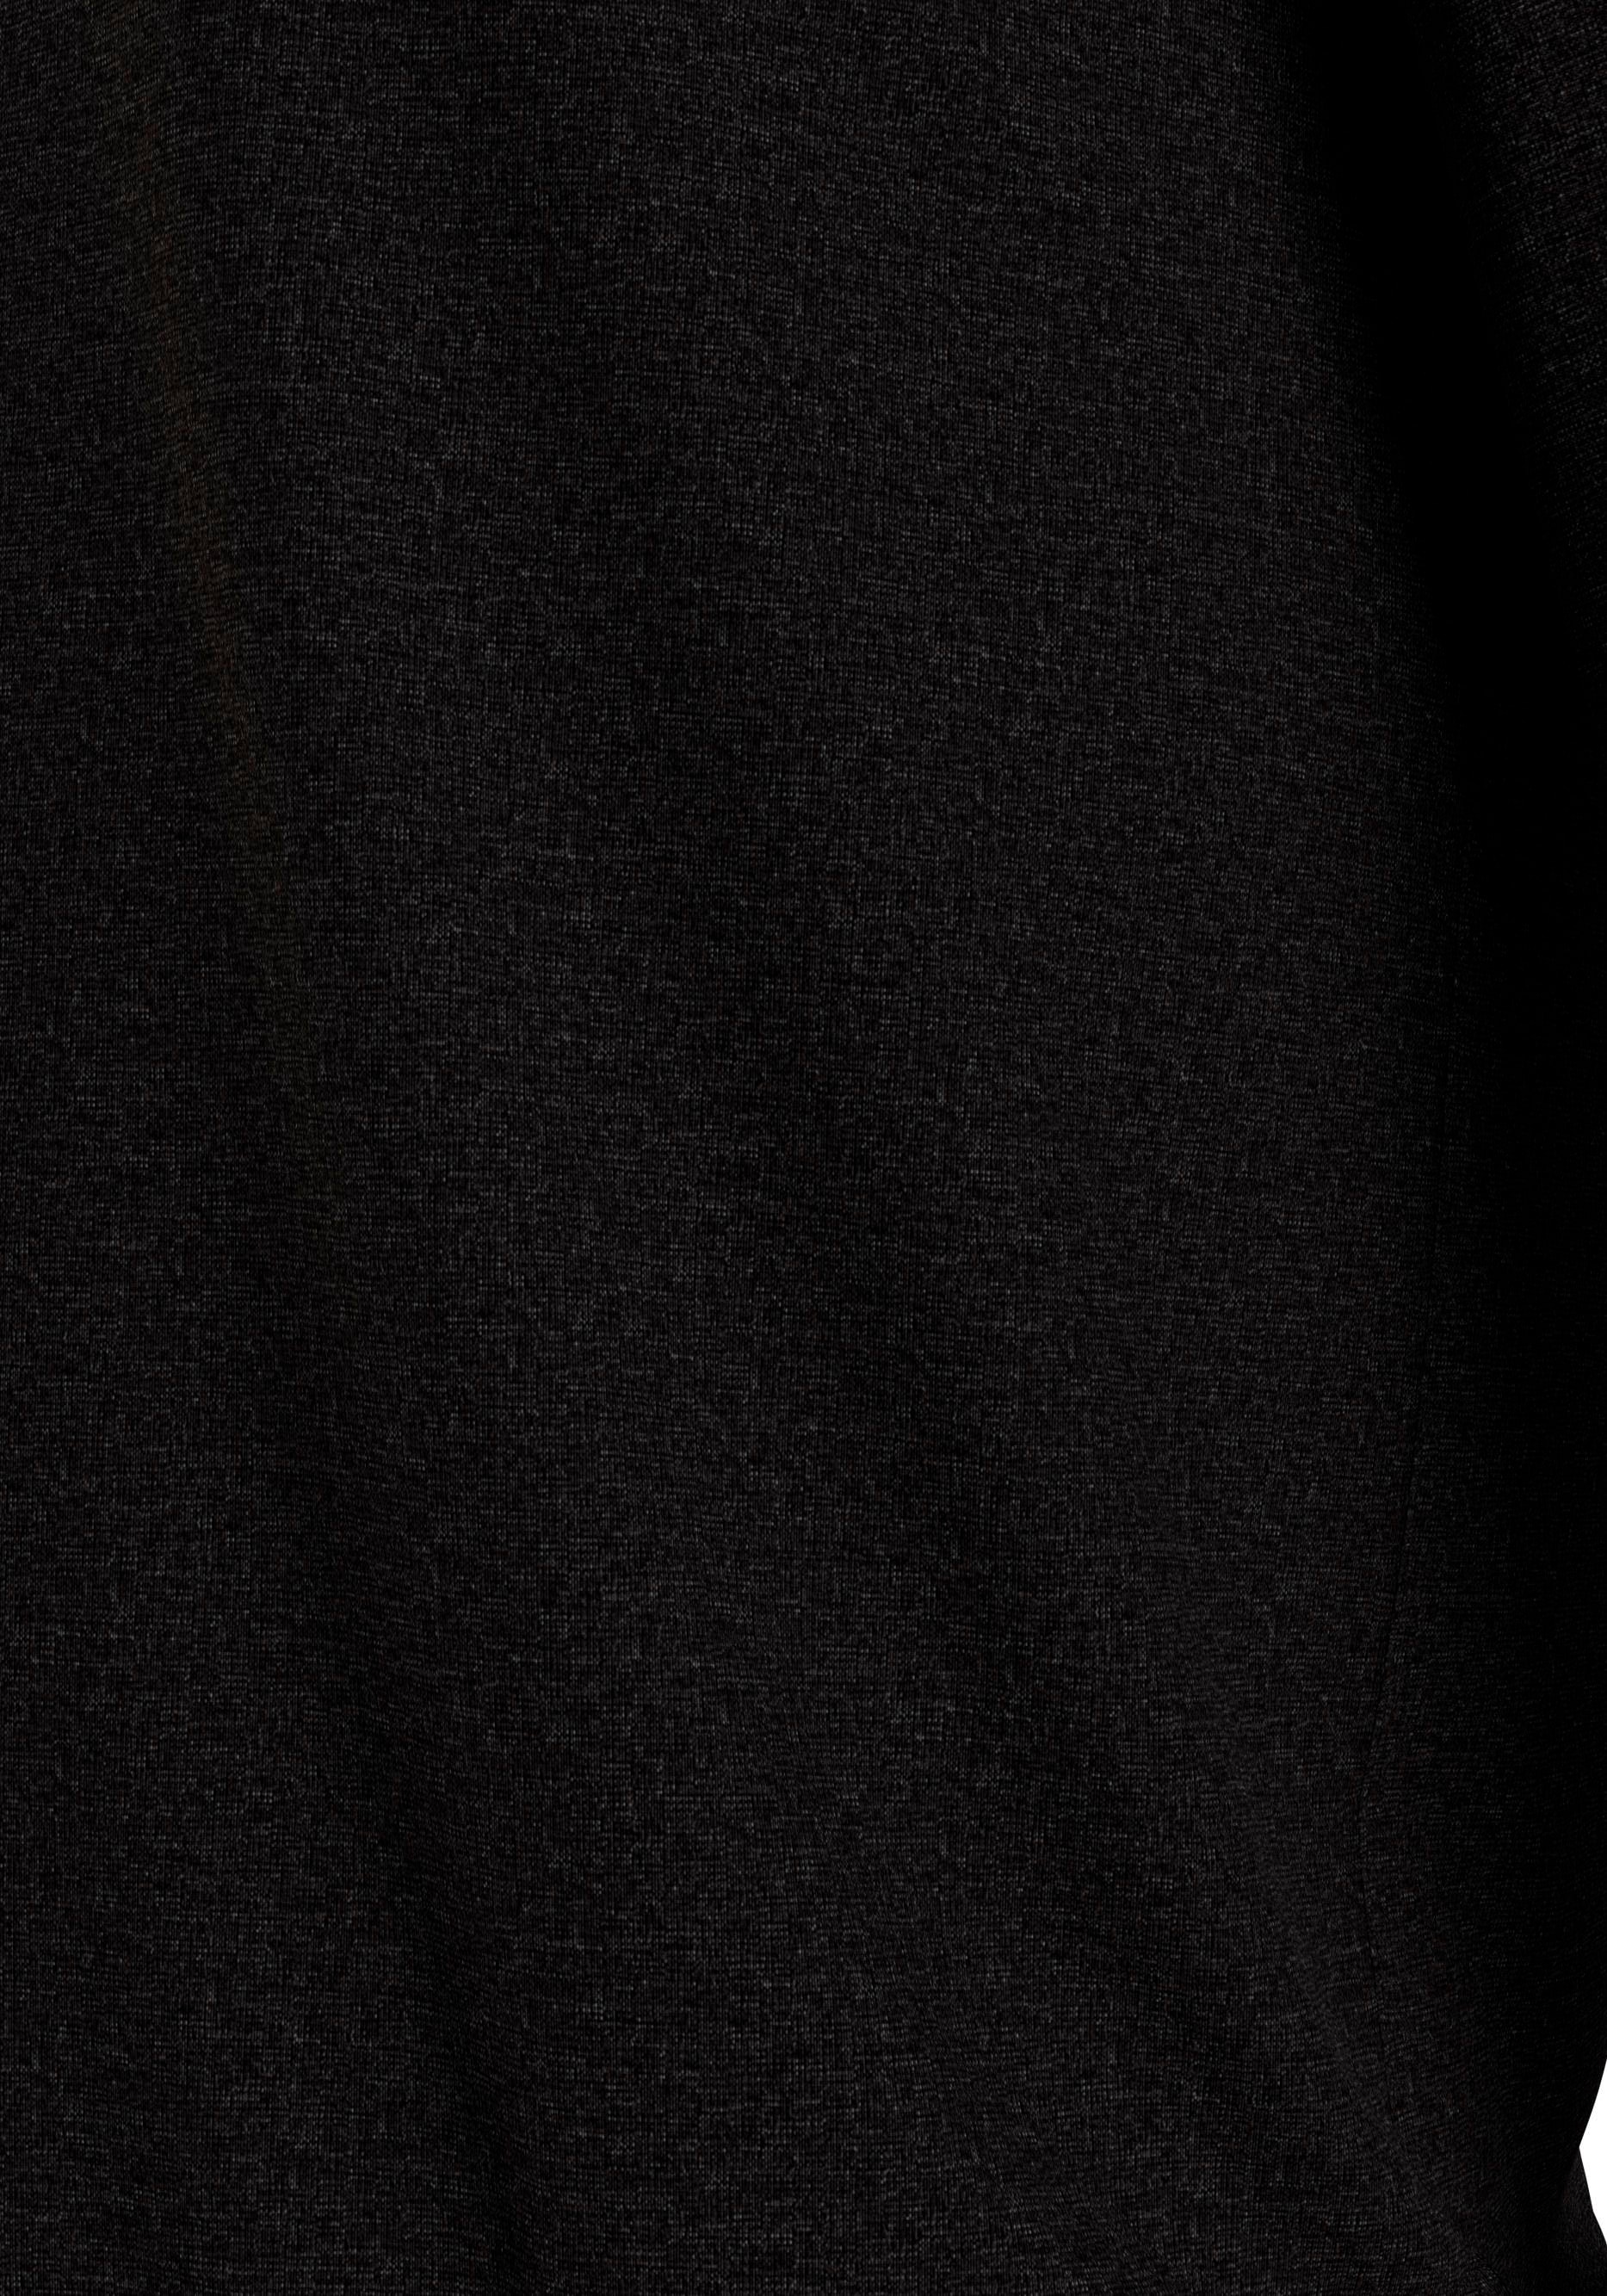 Calvin Klein Underwear Sweatshirt »L/S SWEATSHIRT«, mit Rundhalsausschnitt